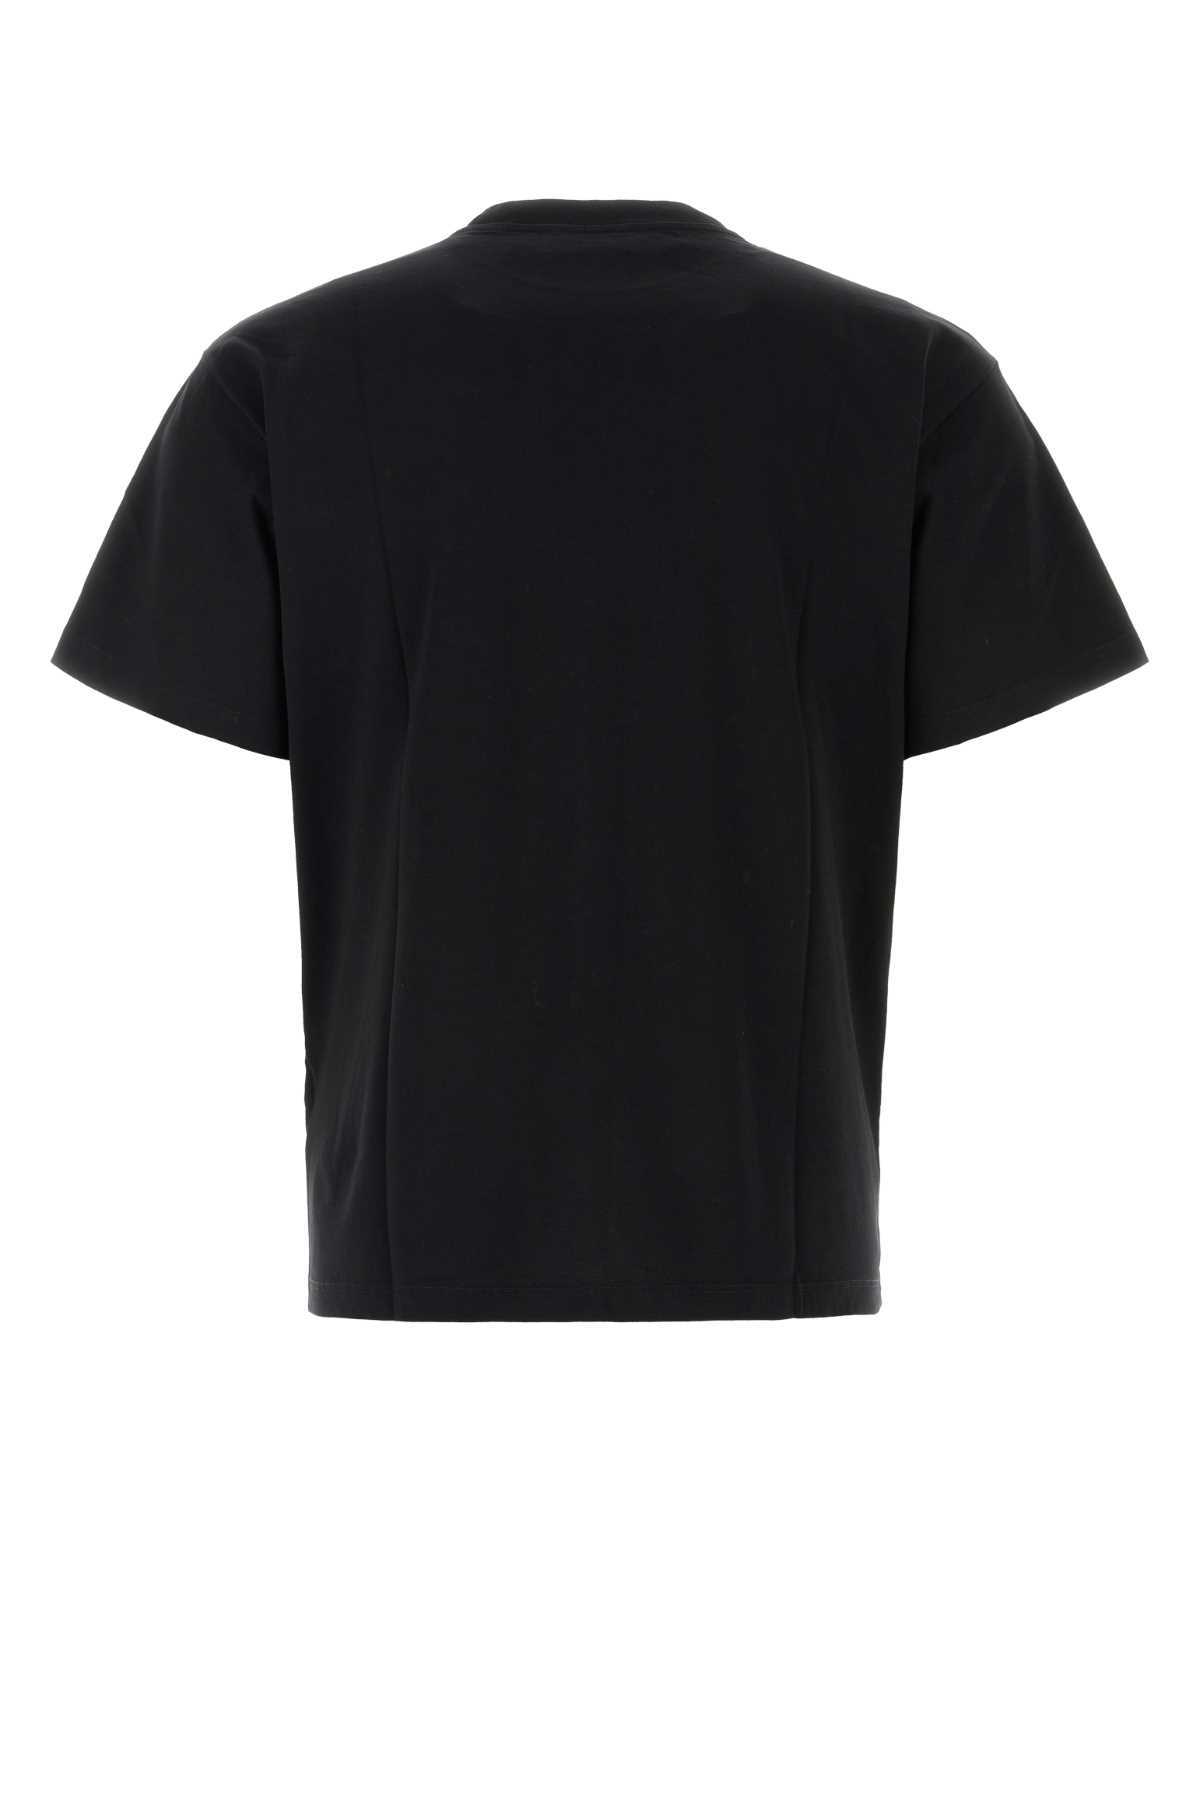 Aries Black Cotton Temple T-shirt